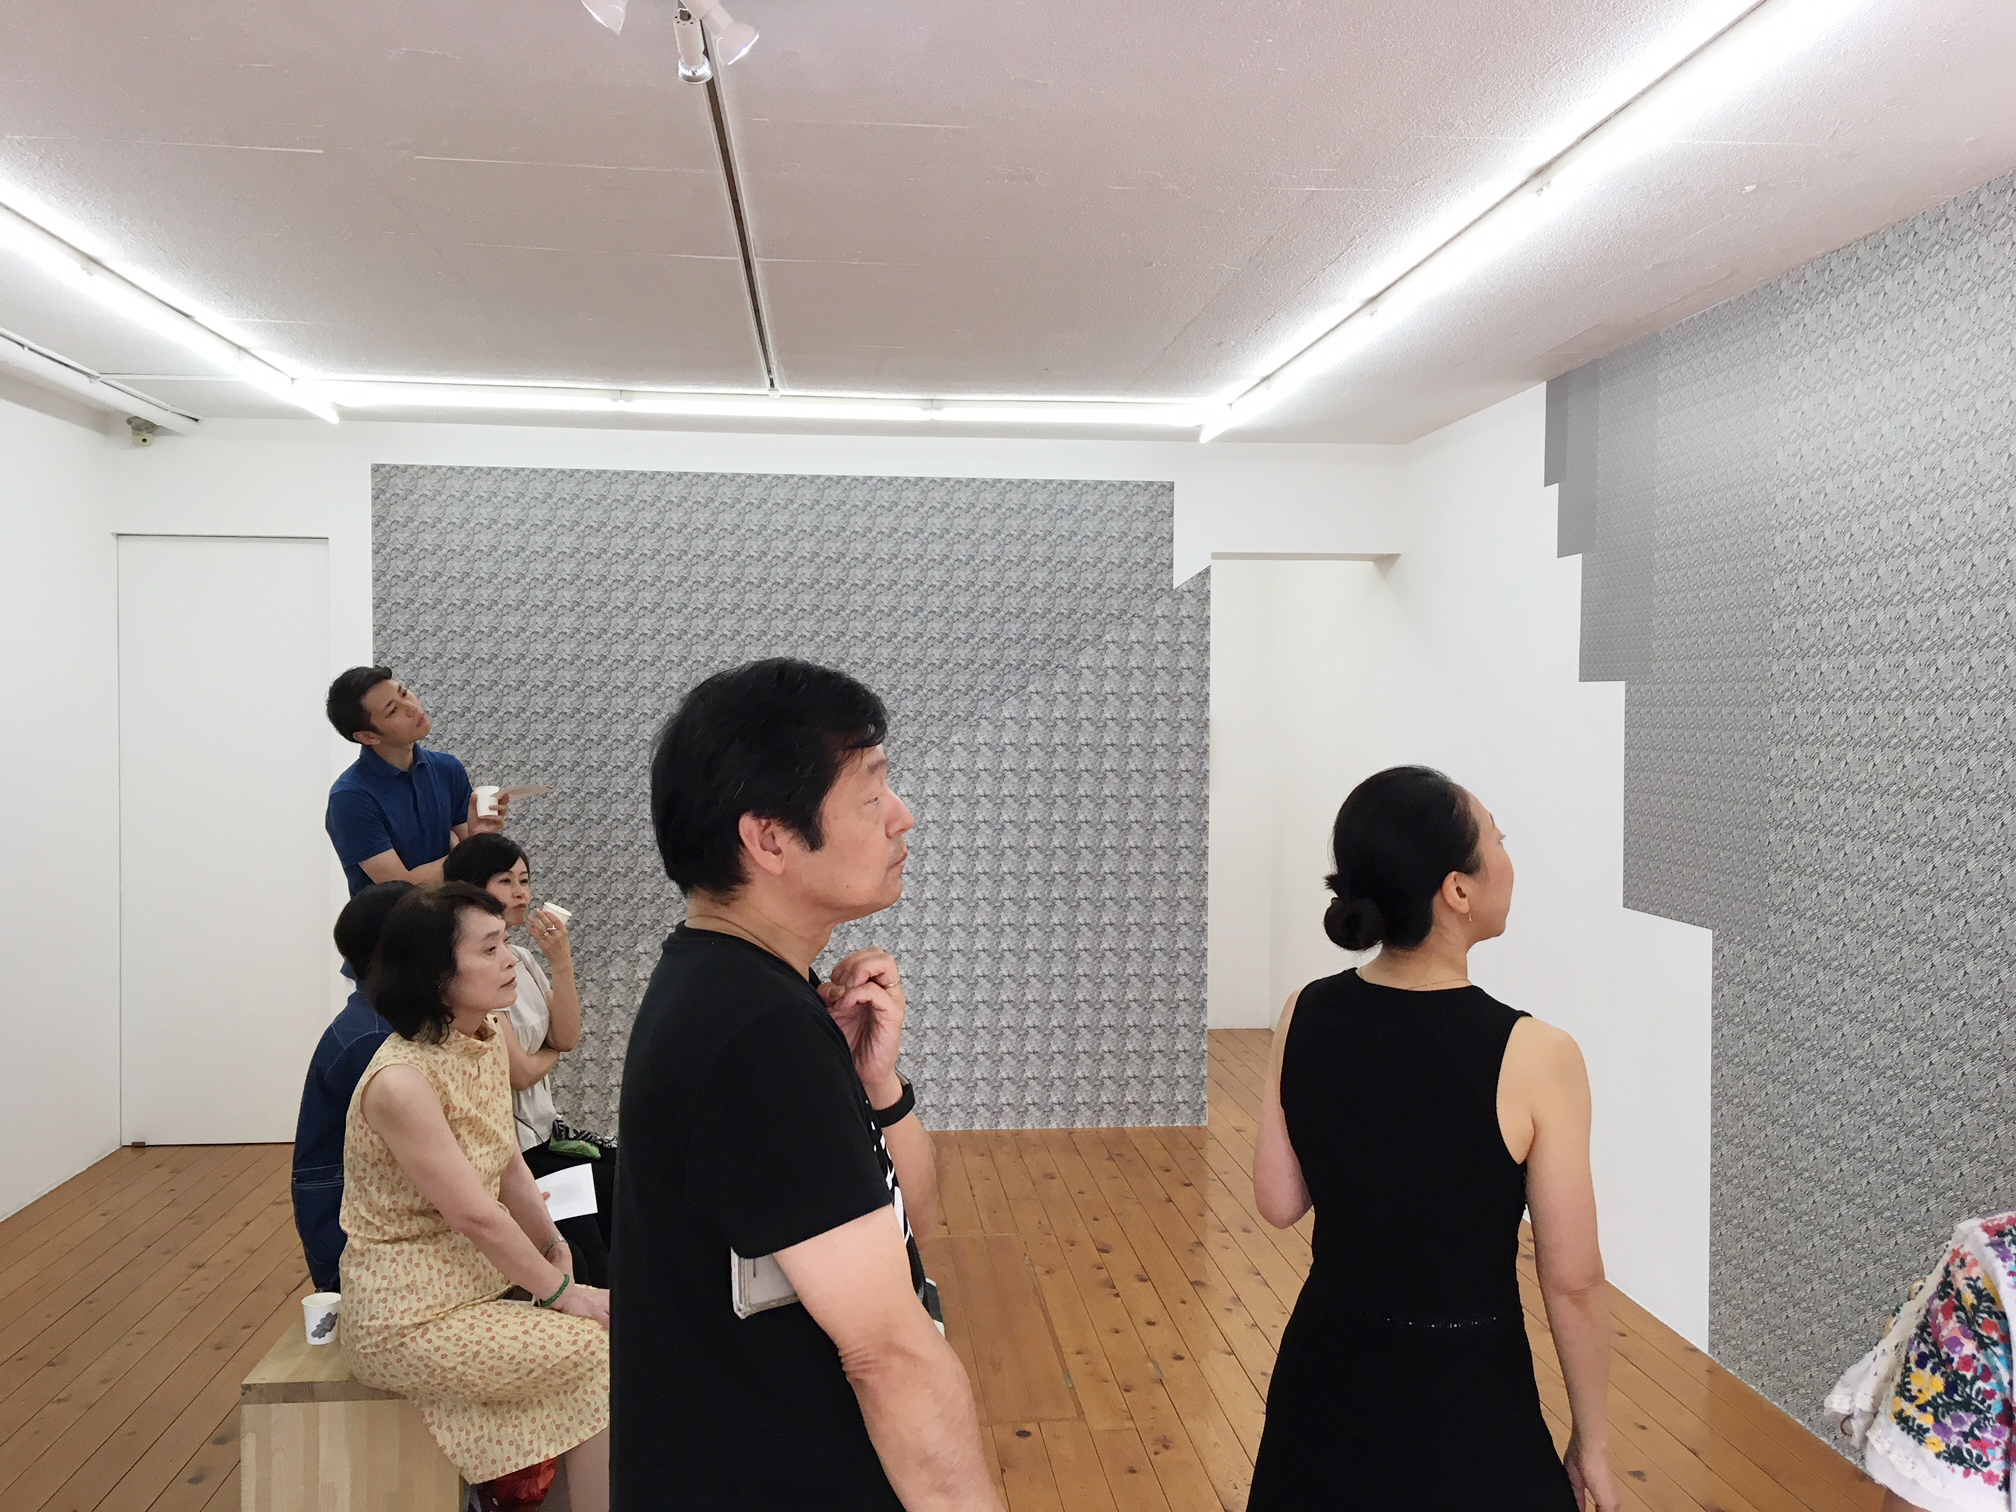 東京のアートギャラリーハギワラプロジェクツで開催された松延総司の小田川悠によるアートイベント対話型鑑賞会